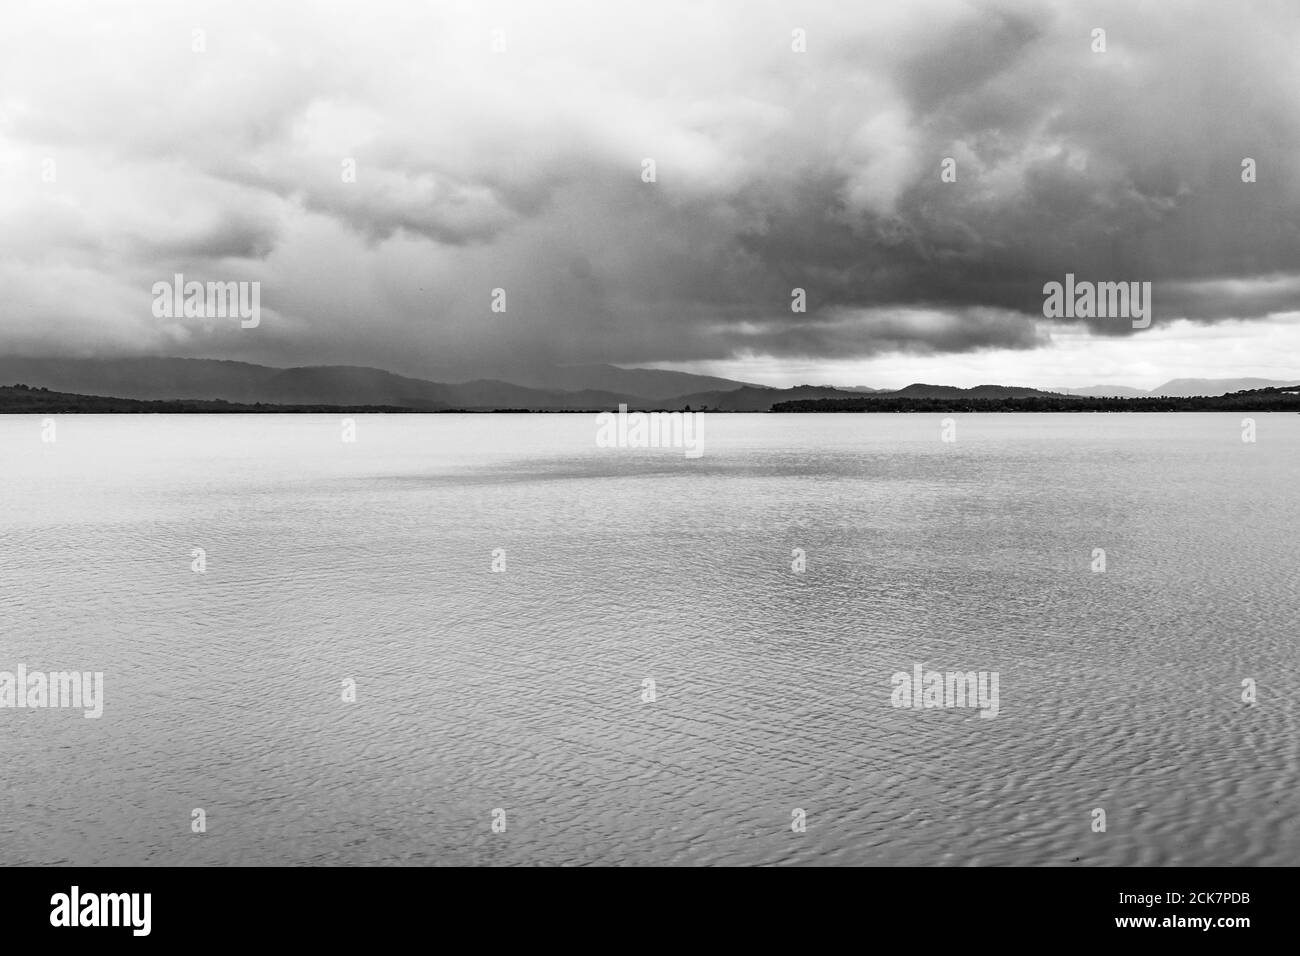 paesaggio incontaminato con lago acqua calma e cielo drammatico a. mattina da un angolo piatto in bianco e nero immagine è preso alla spiaggia om gokarna karnataka in Foto Stock